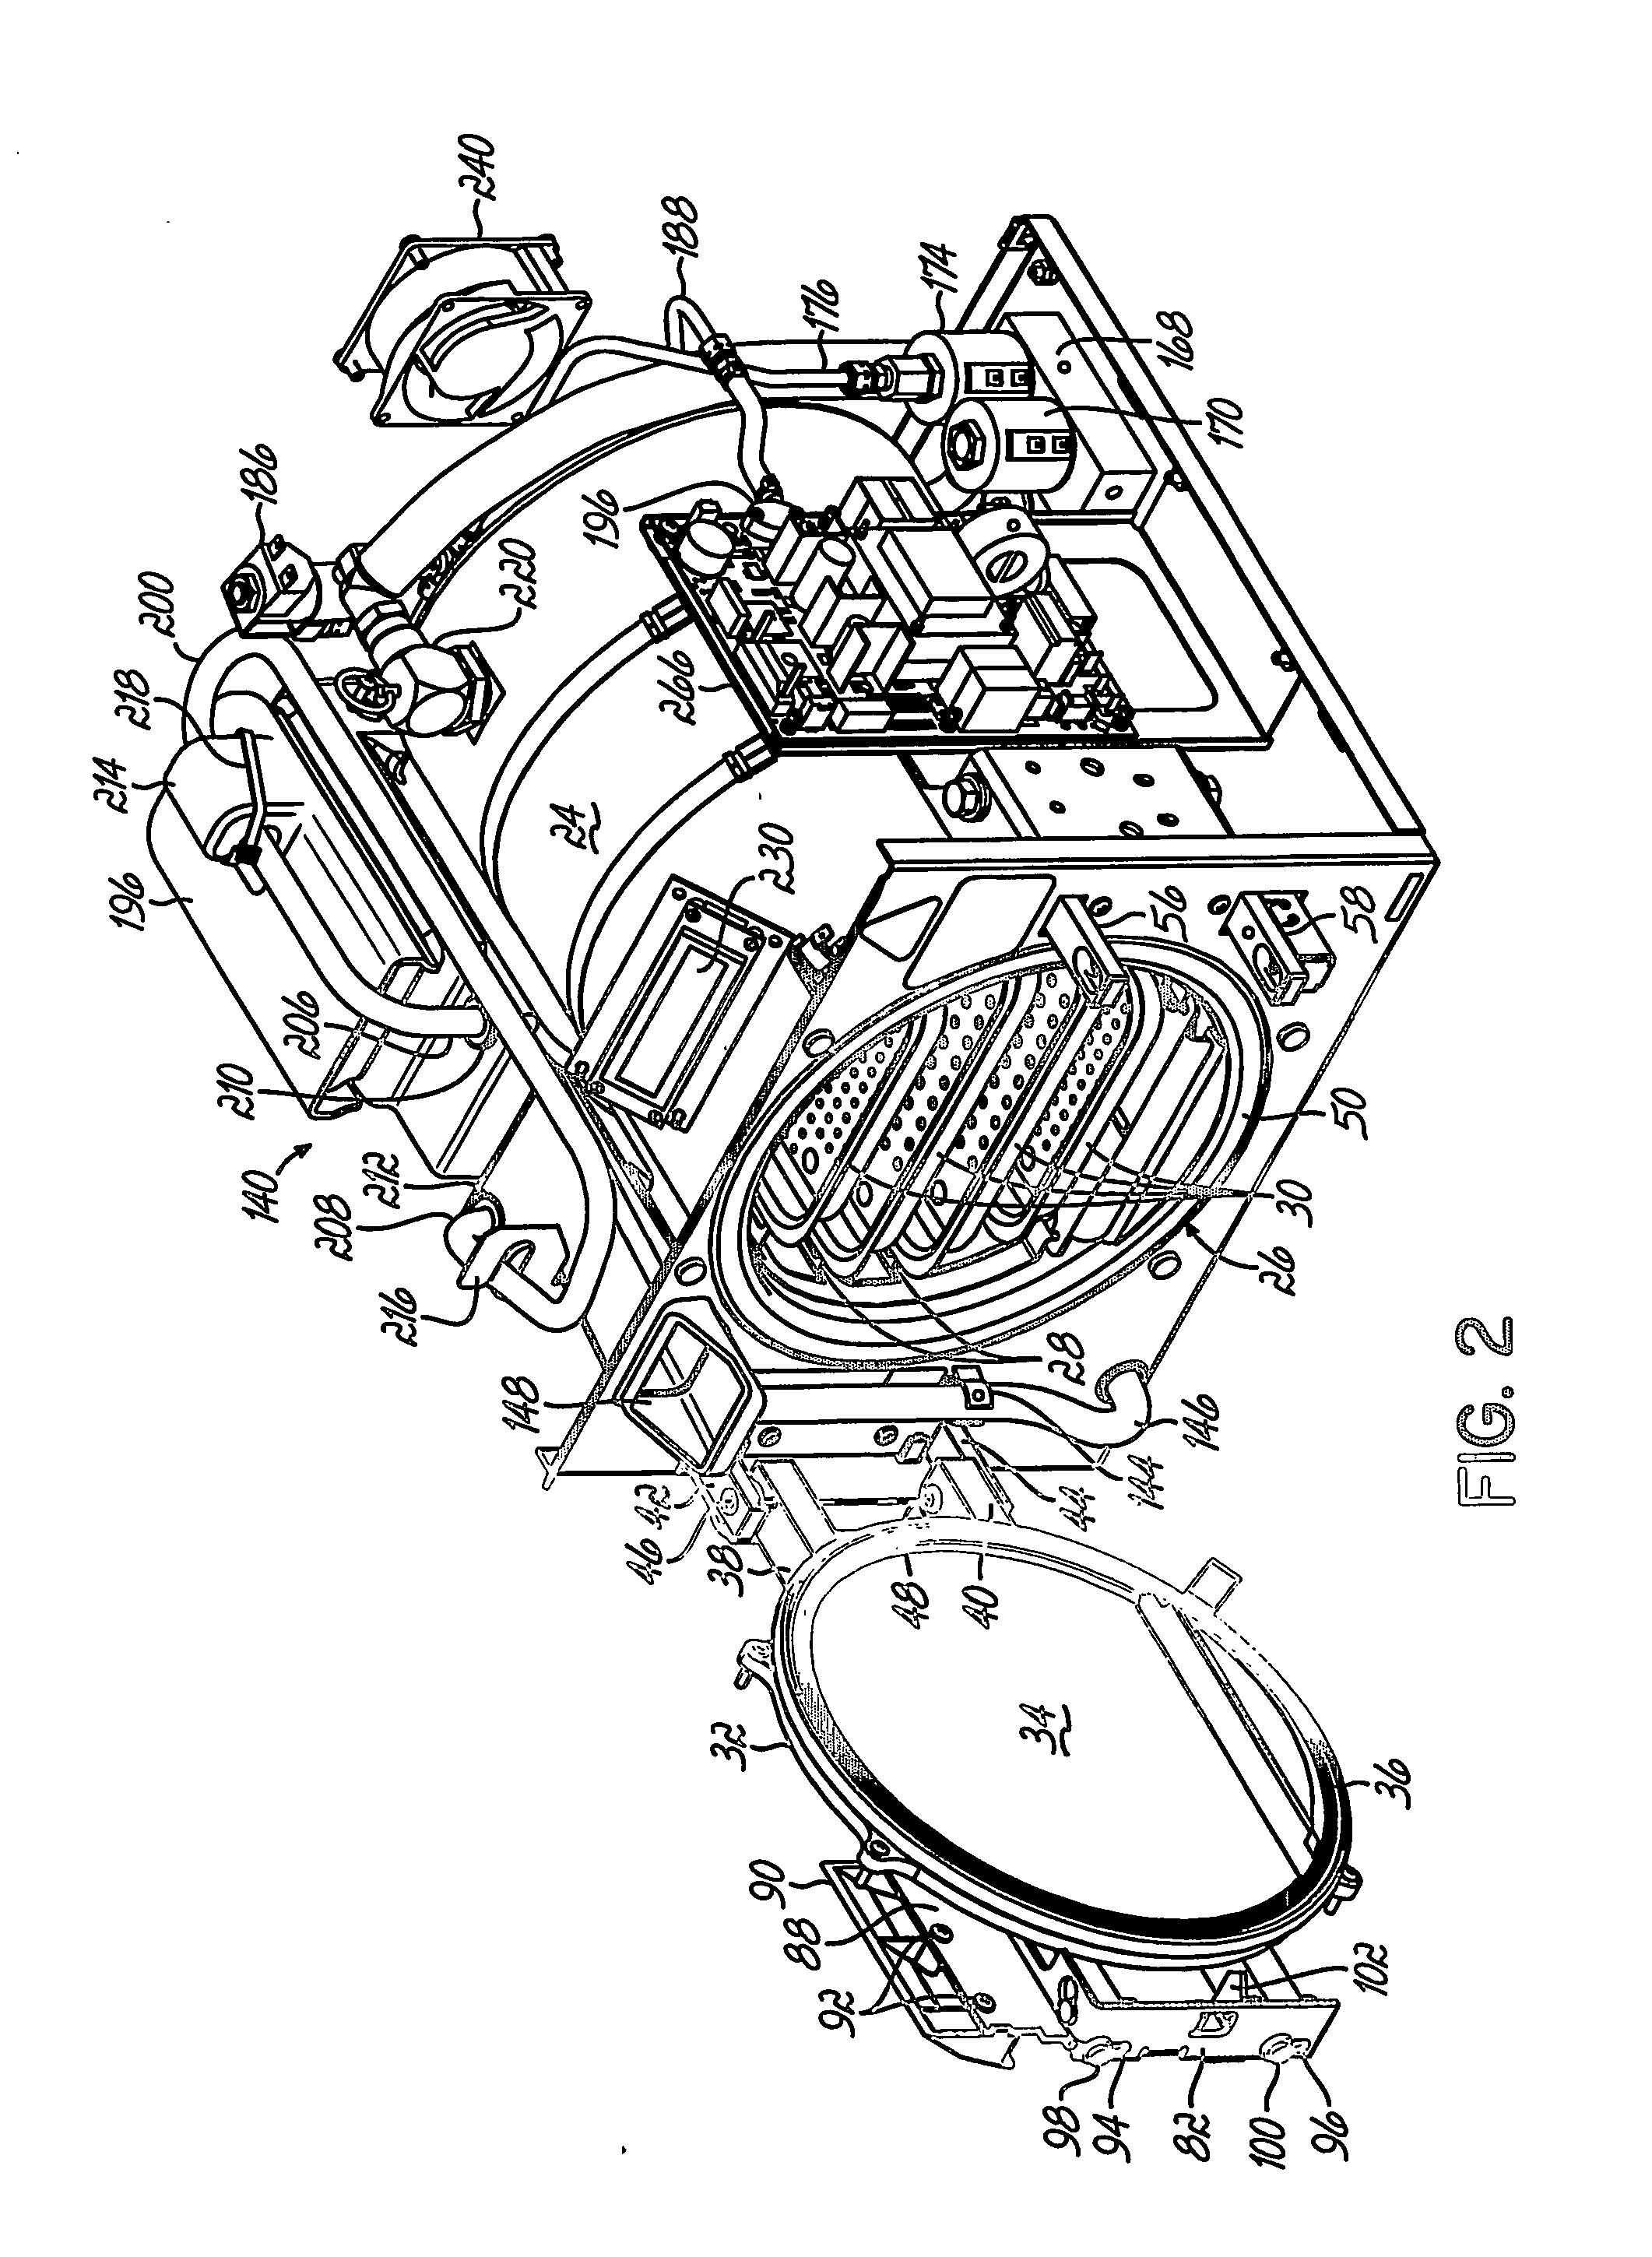 Sterilizing apparatus